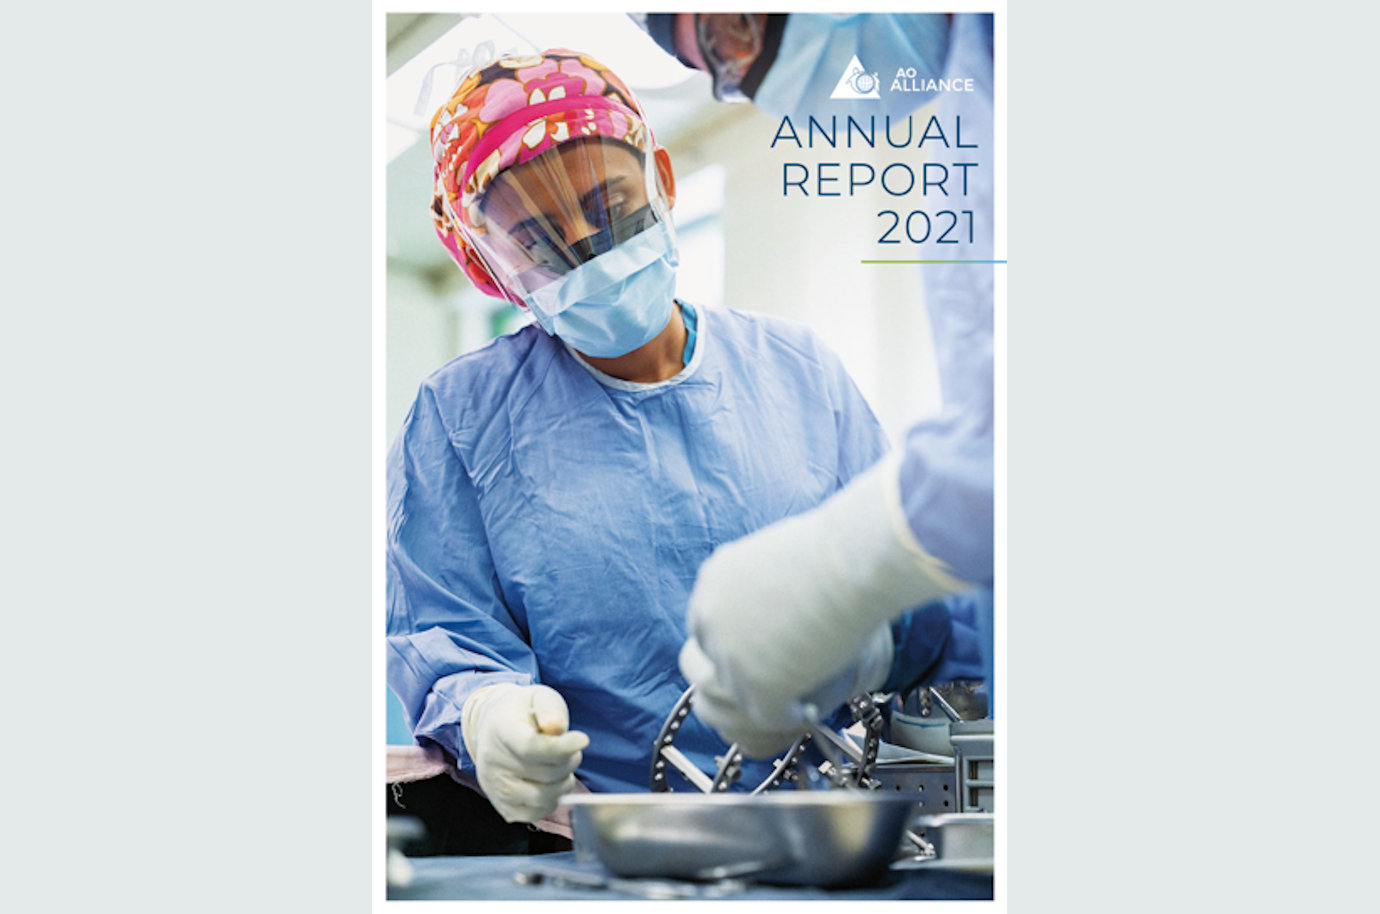 Le rapport annuel 2021 est maintenant disponible en ligne